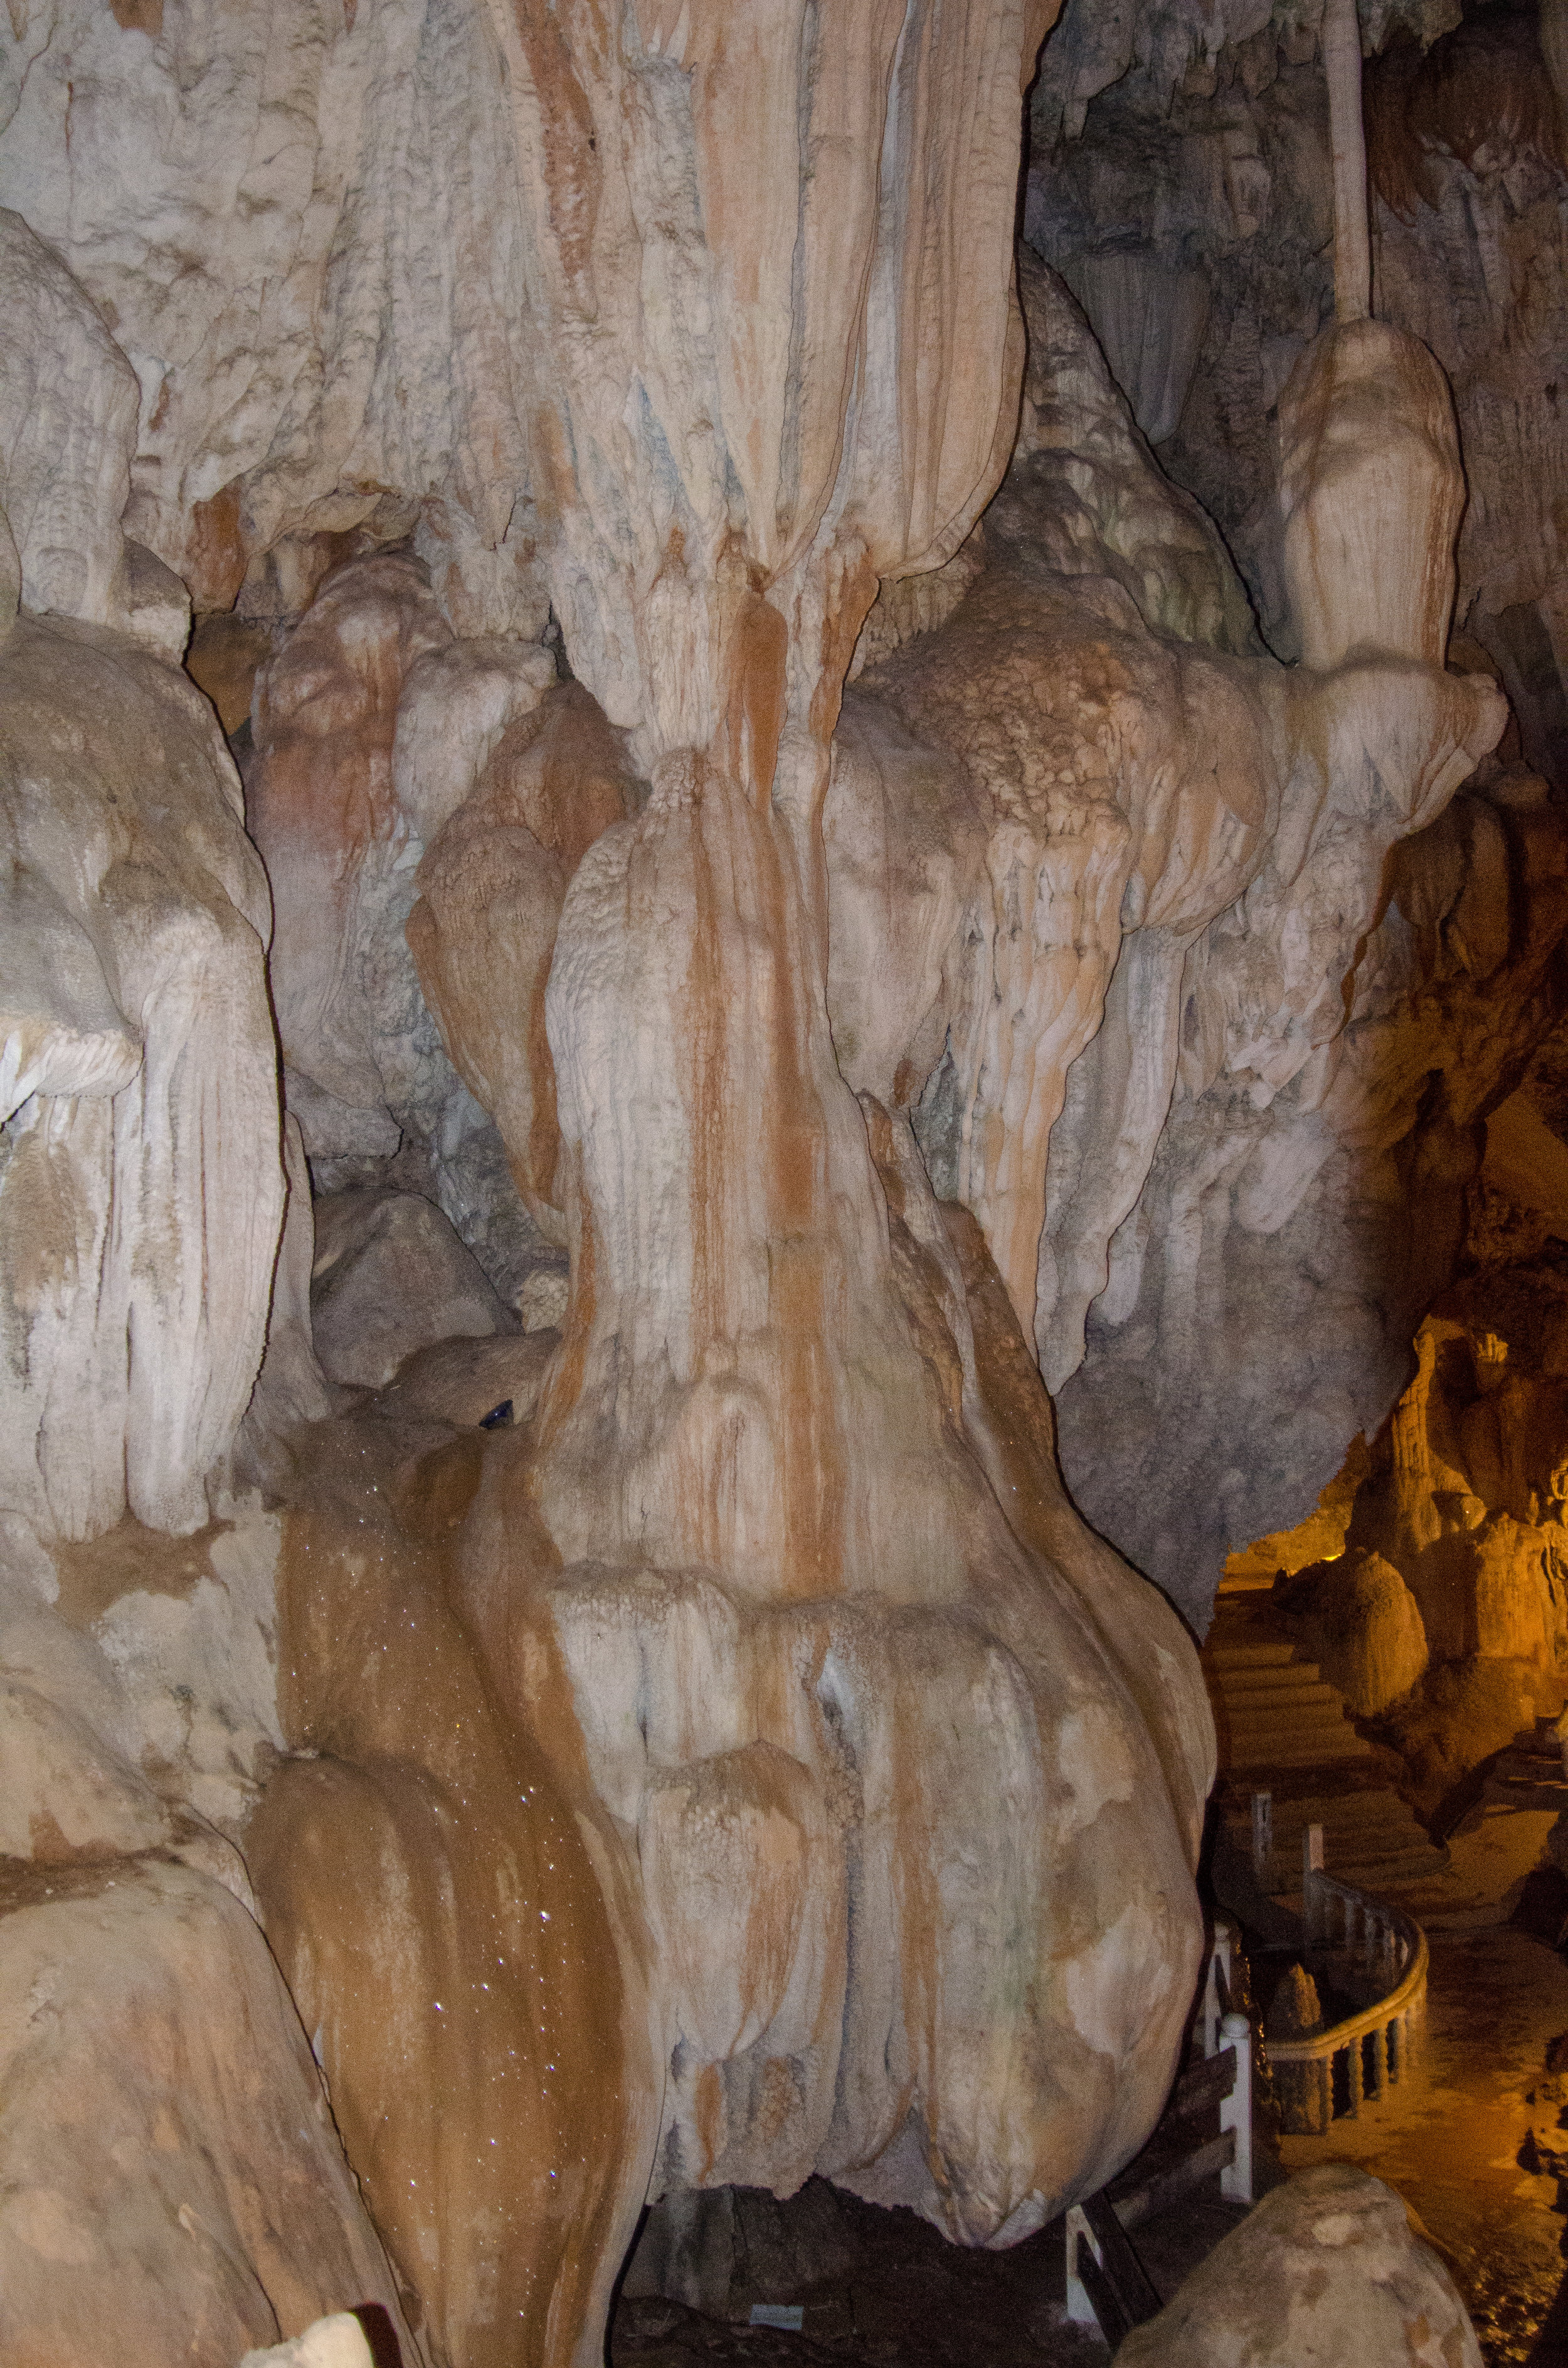 Tham Jang cave, Vang Vieng, Laos